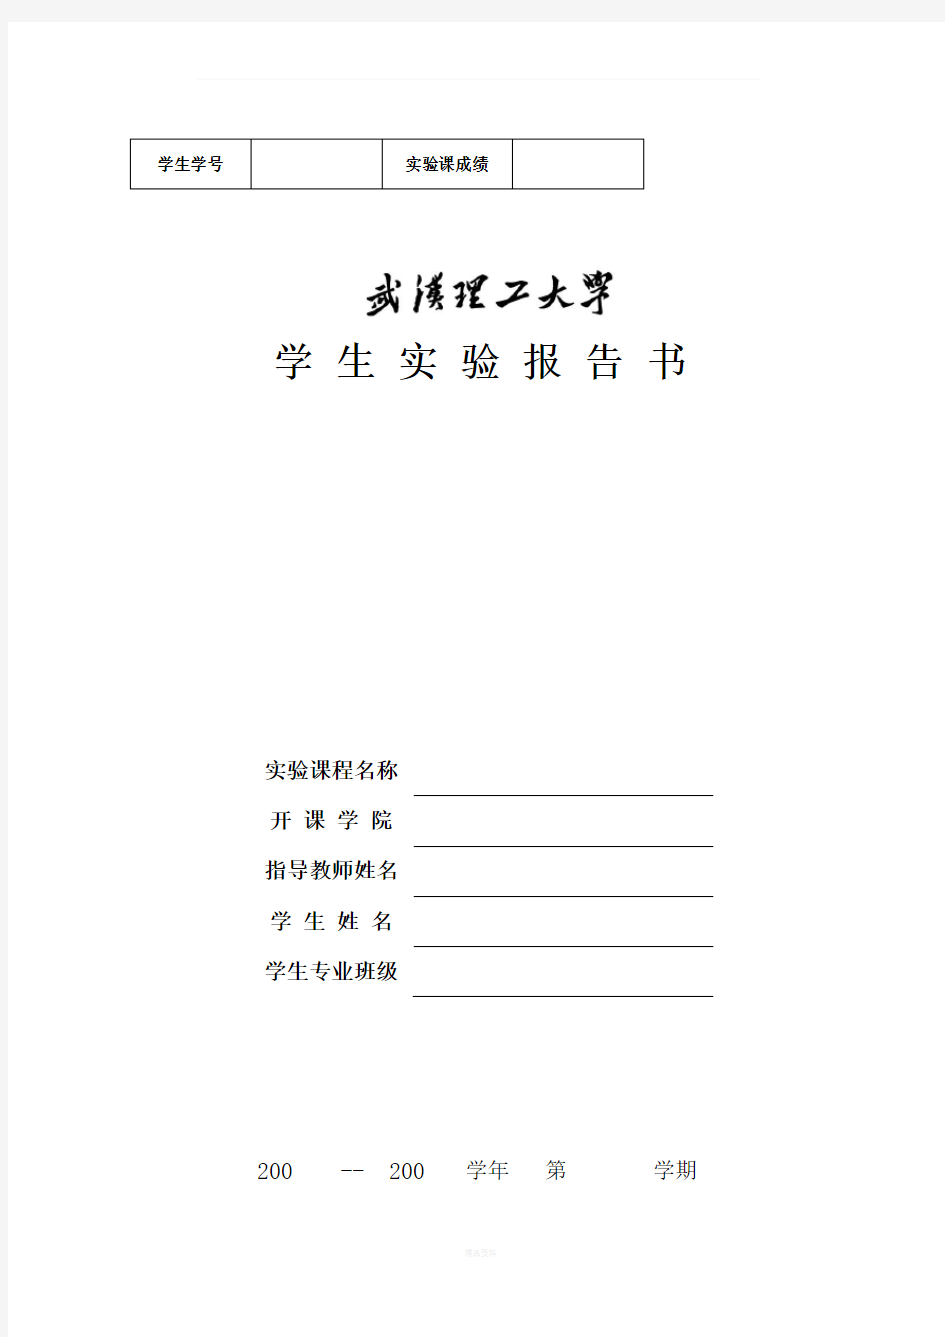 武汉理工大学学生实验报告书及封面